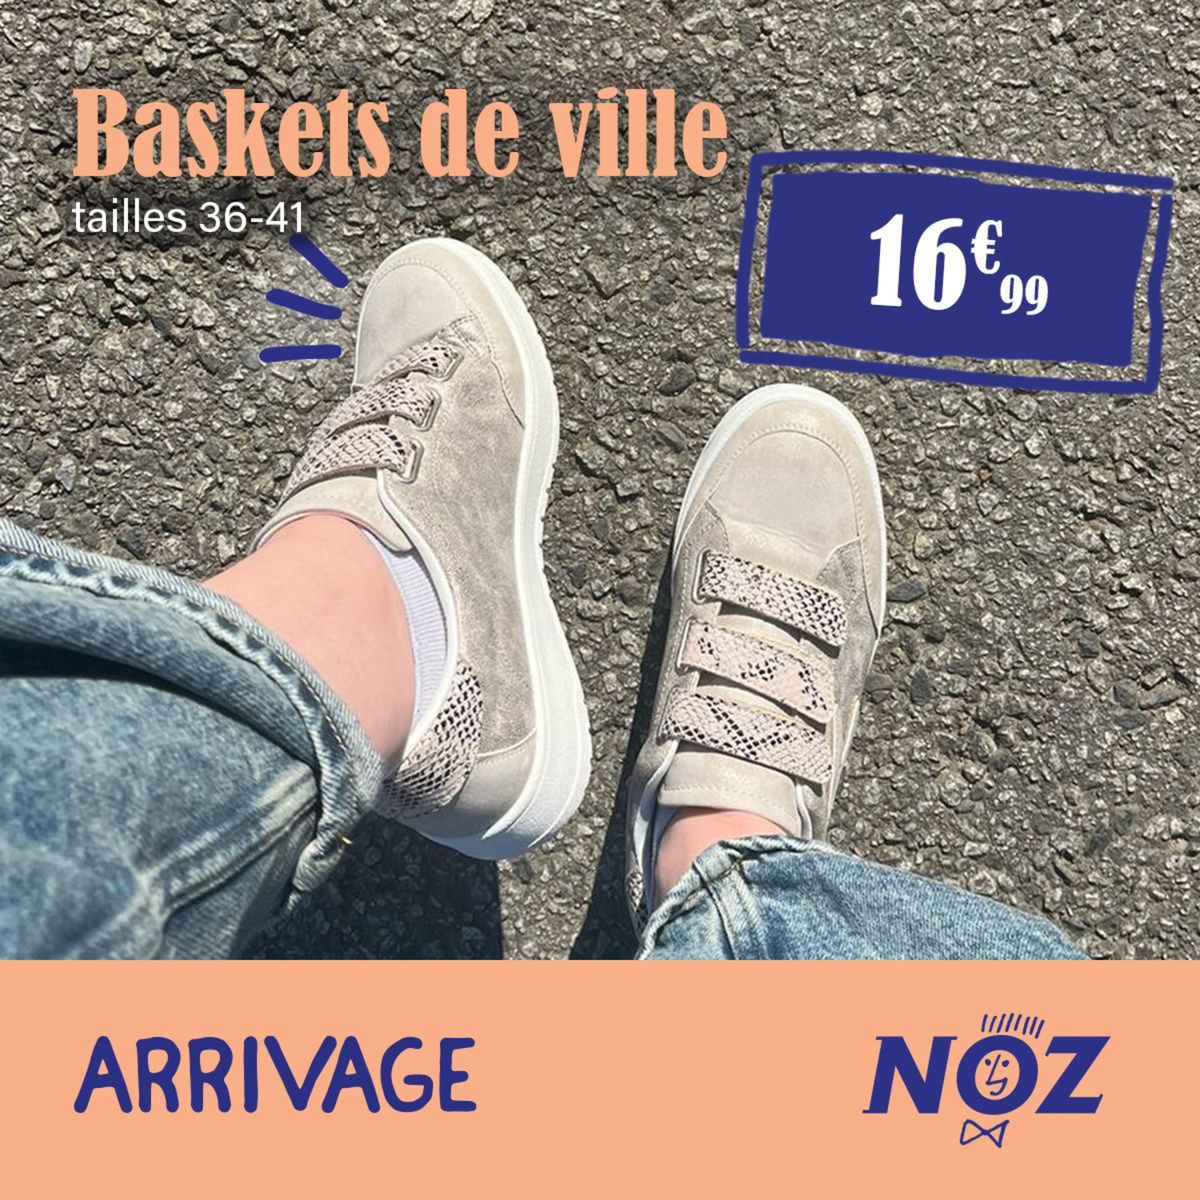 Catalogue Baskets de ville Divers modèles, page 00003